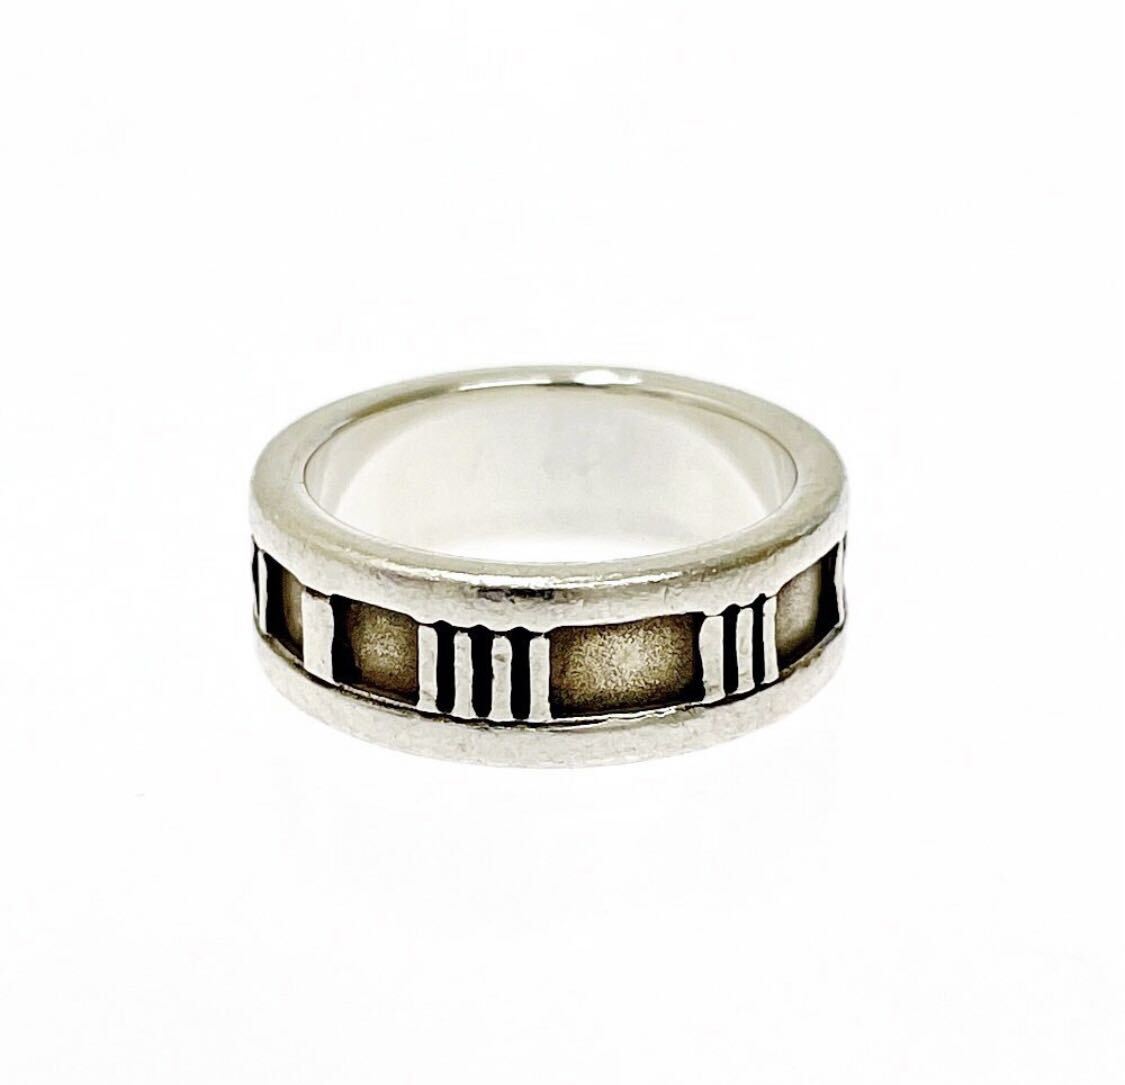 【新品仕上げ済み!!】TIFFANY & Co. ティファニー シルバー アトラス 5.3g 925刻印 指輪 リングの画像4